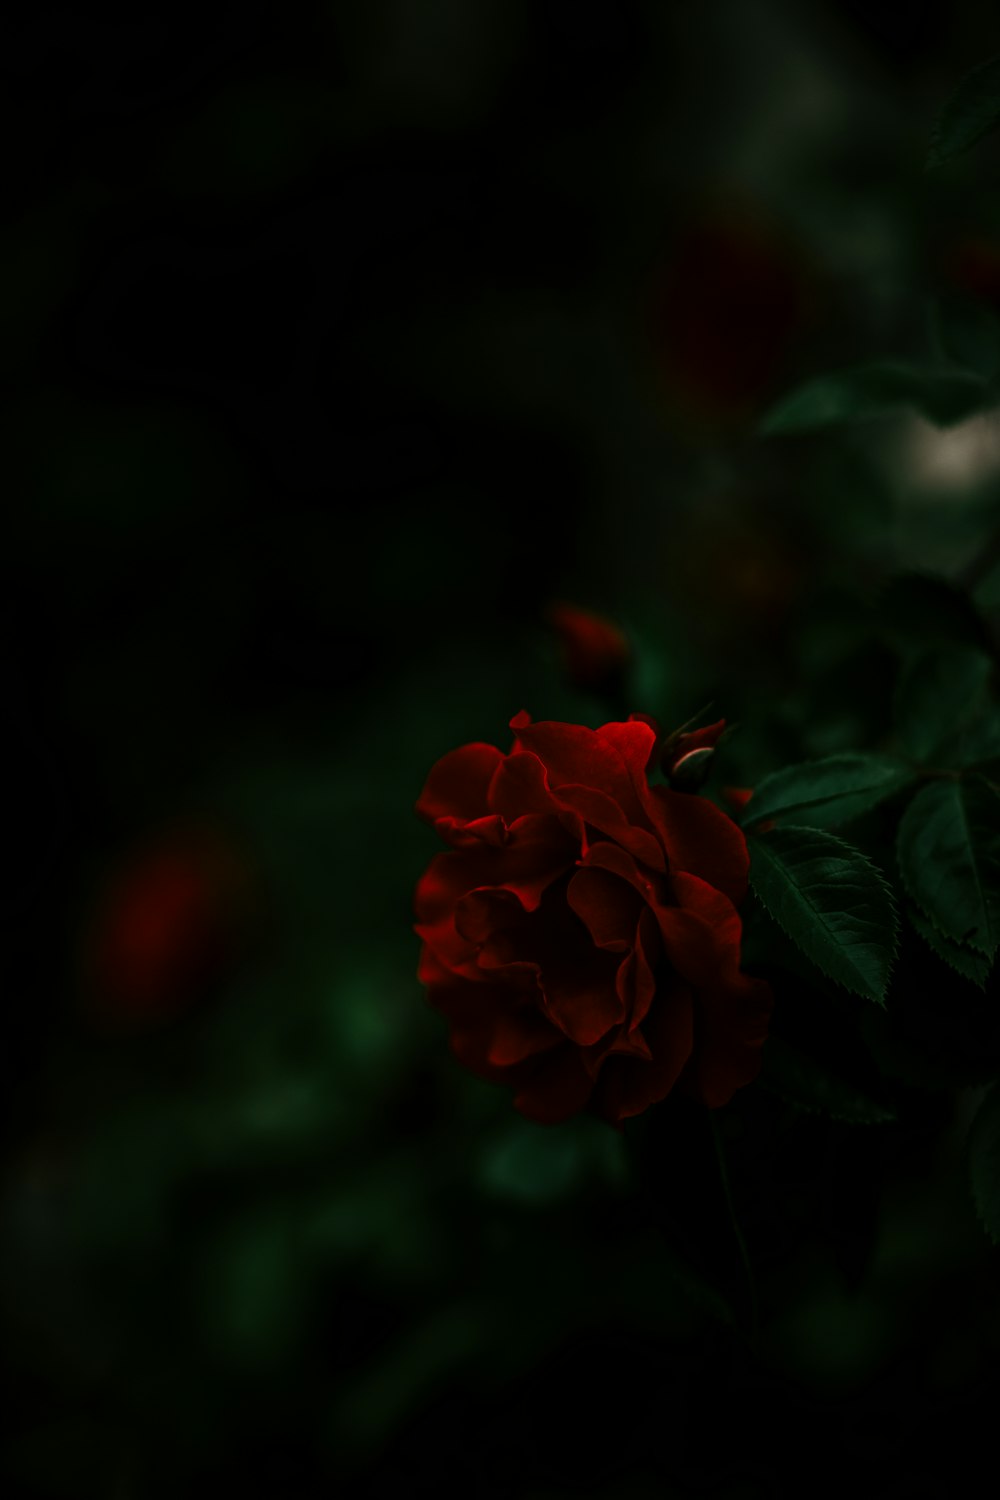 fotografia ravvicinata del fiore di rosa rossa durante il giorno